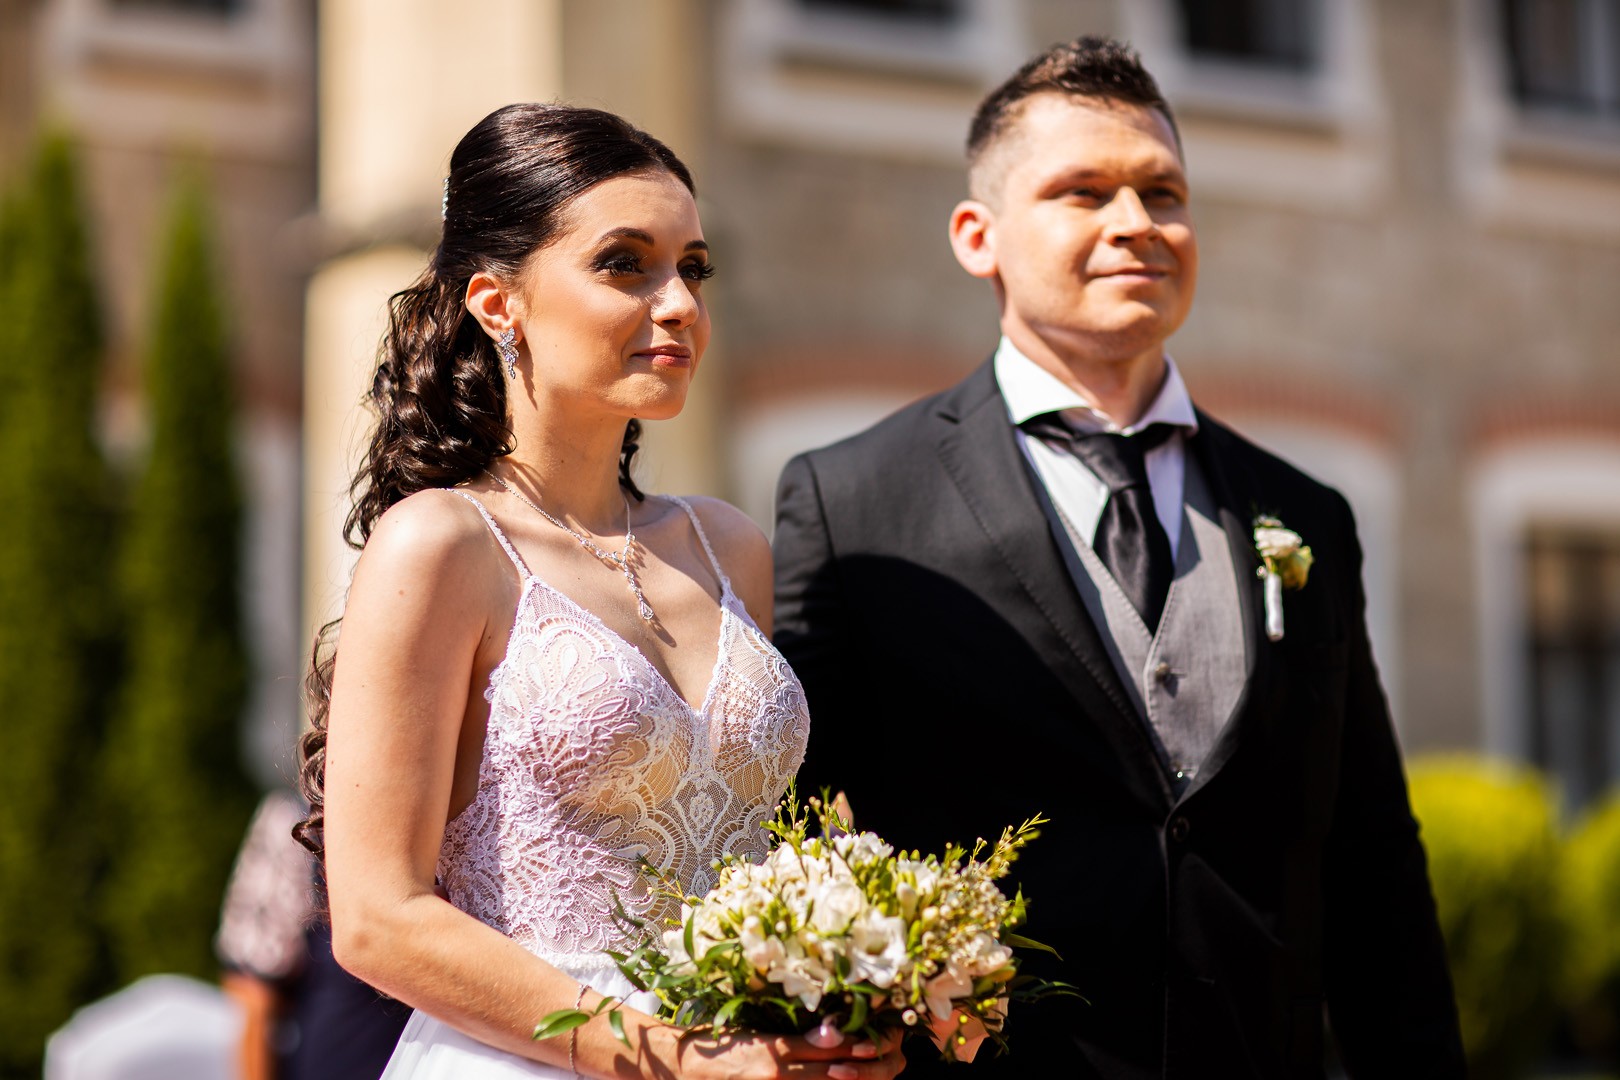 Picturesque dream wedding of Kloudy & Michal in Hluboká nad Vltavou. - 0147.jpg